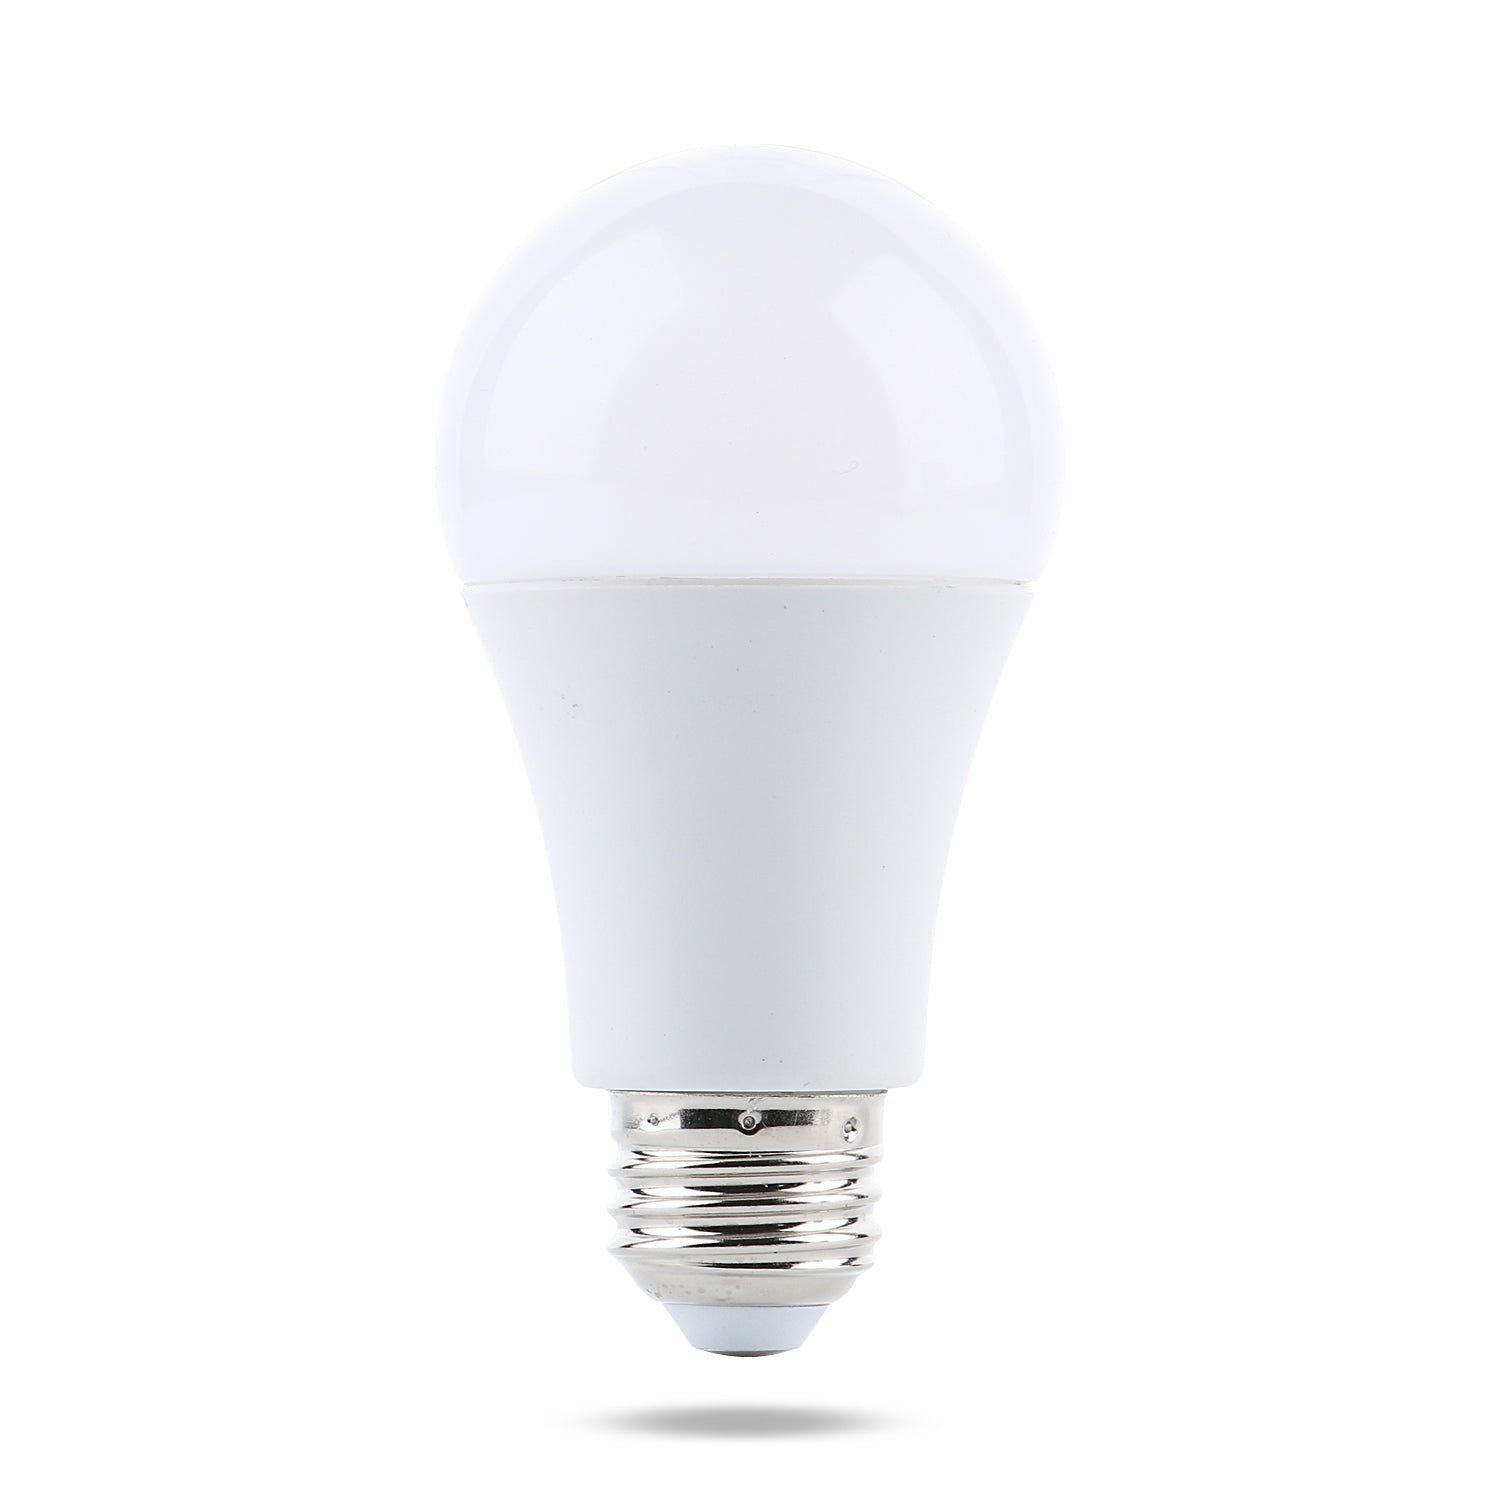 12V DC LED Bulb | 10 Watt | Standard Screw-in Edison Base E26 Watt-a-Light